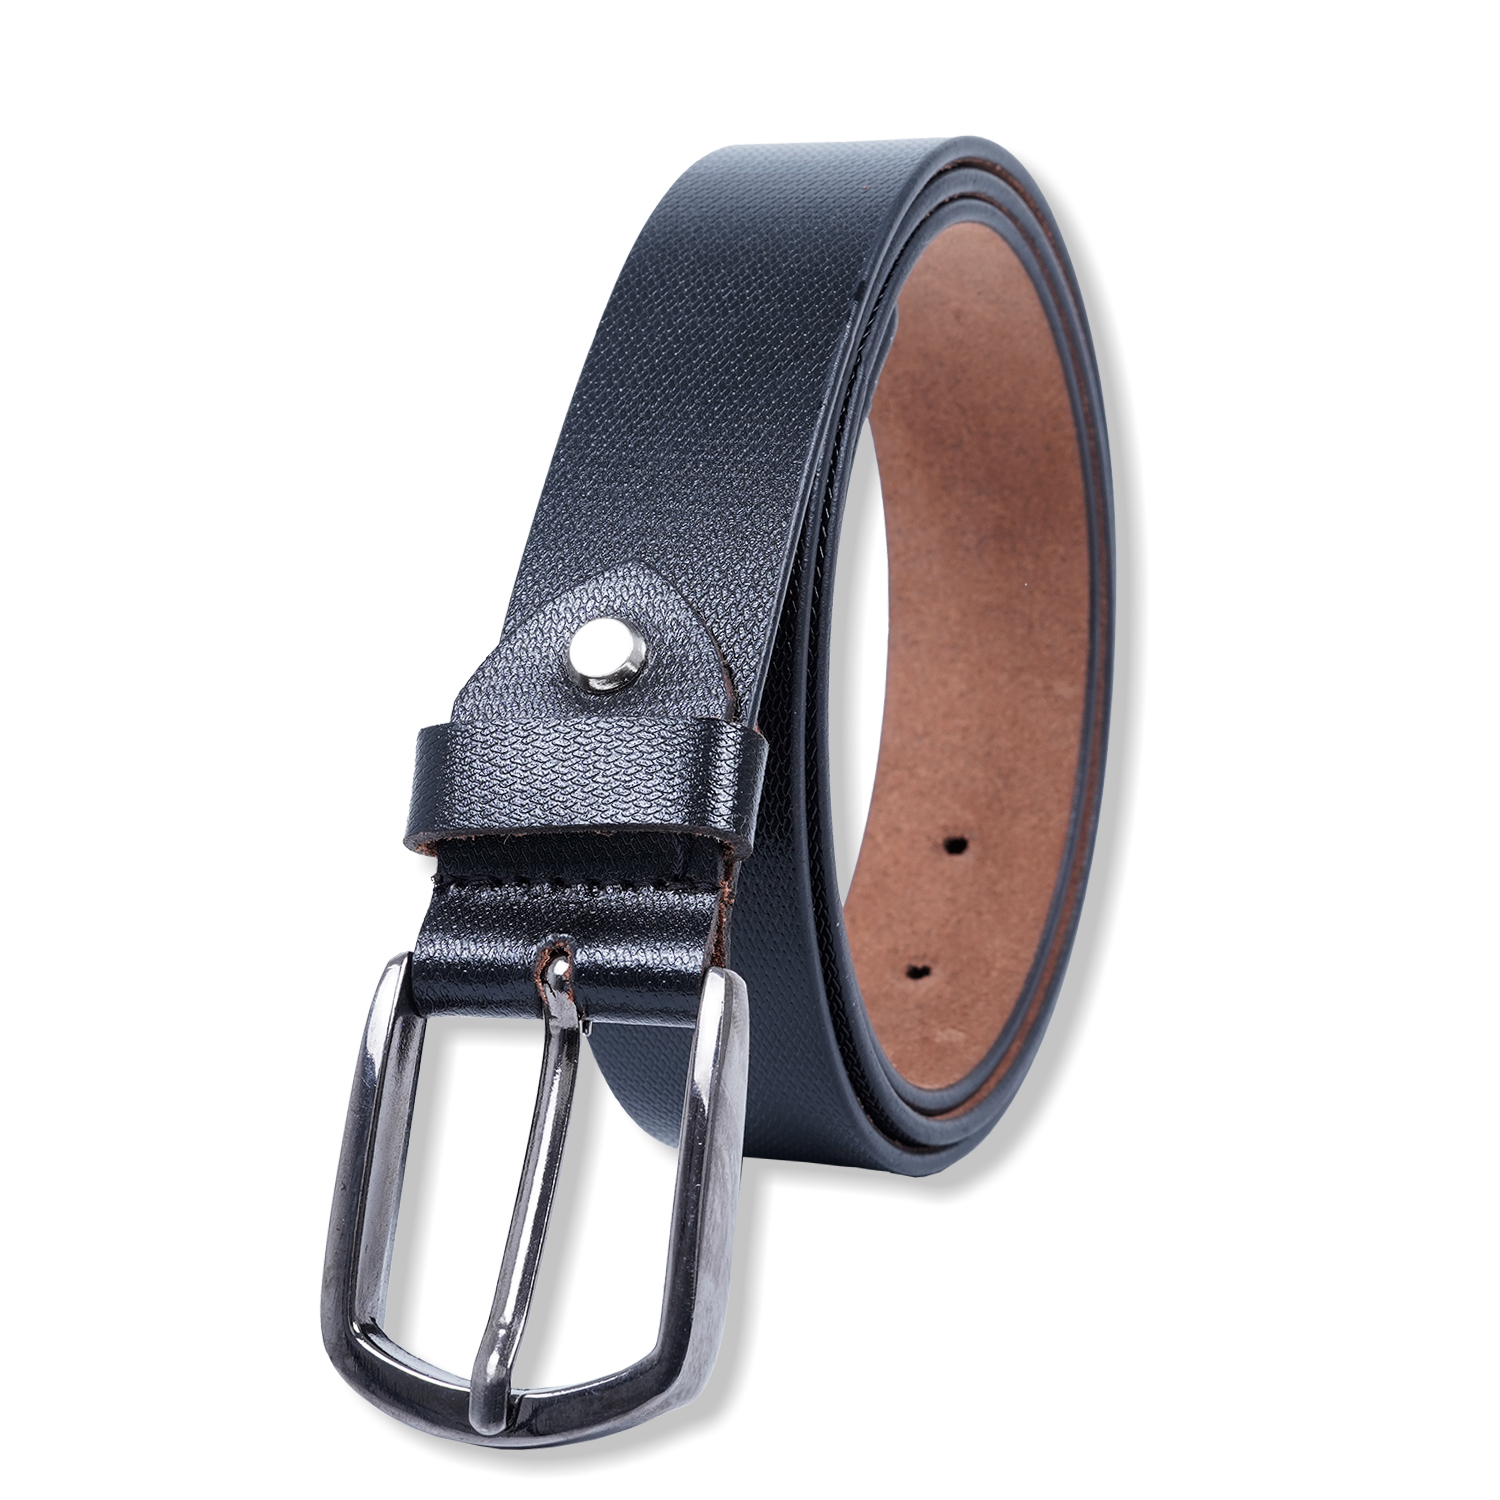  Genuine Leather belt |Formal Belt | Black